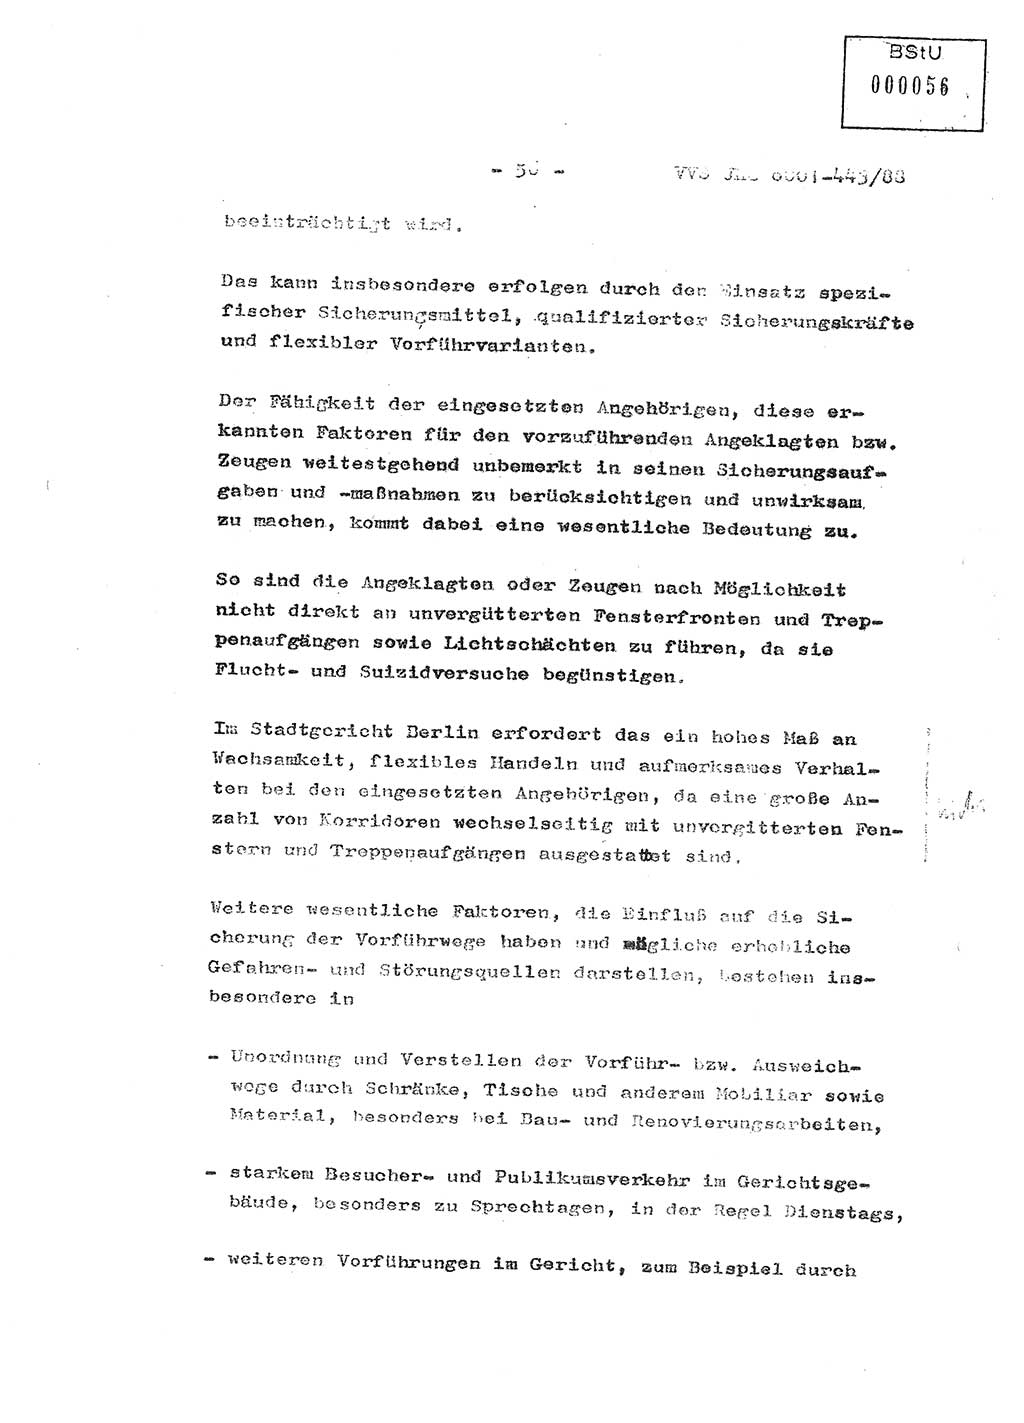 Diplomarbeit Hauptmann Michael Rast (Abt. ⅩⅣ), Major Bernd Rahaus (Abt. ⅩⅣ), Ministerium für Staatssicherheit (MfS) [Deutsche Demokratische Republik (DDR)], Juristische Hochschule (JHS), Vertrauliche Verschlußsache (VVS) o001-443/88, Potsdam 1988, Seite 56 (Dipl.-Arb. MfS DDR JHS VVS o001-443/88 1988, S. 56)